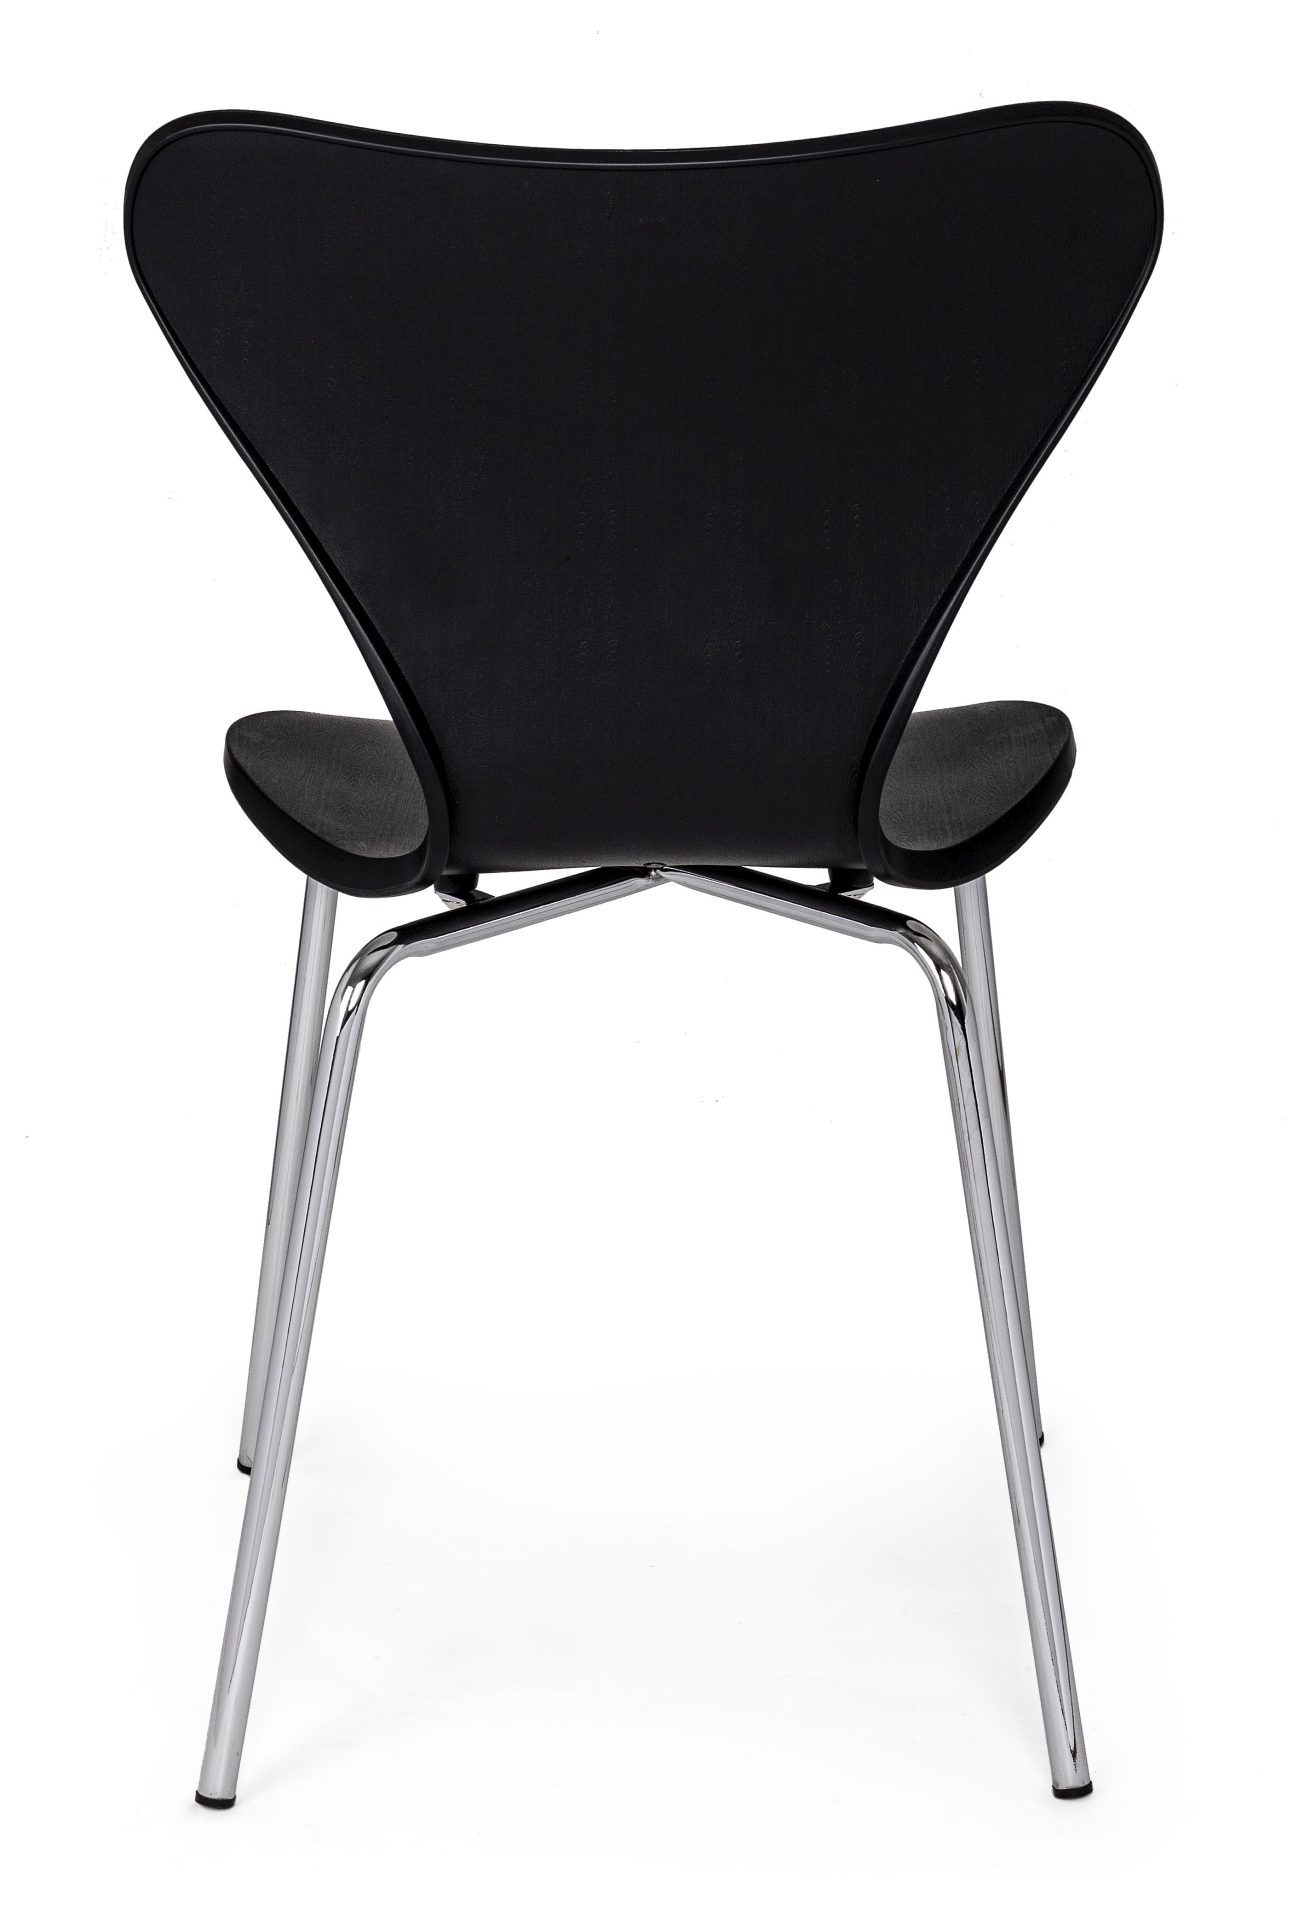 Der Stuhl Tessa überzeugt mit seinem modernem Design. Gefertigt wurde der Stuhl aus Kunststoff, welcher einen schwarzen Farbton besitzt. Das Gestell ist aus Metall und ist in einer silbernen Farbe. Die Sitzhöhe beträgt 45 cm.